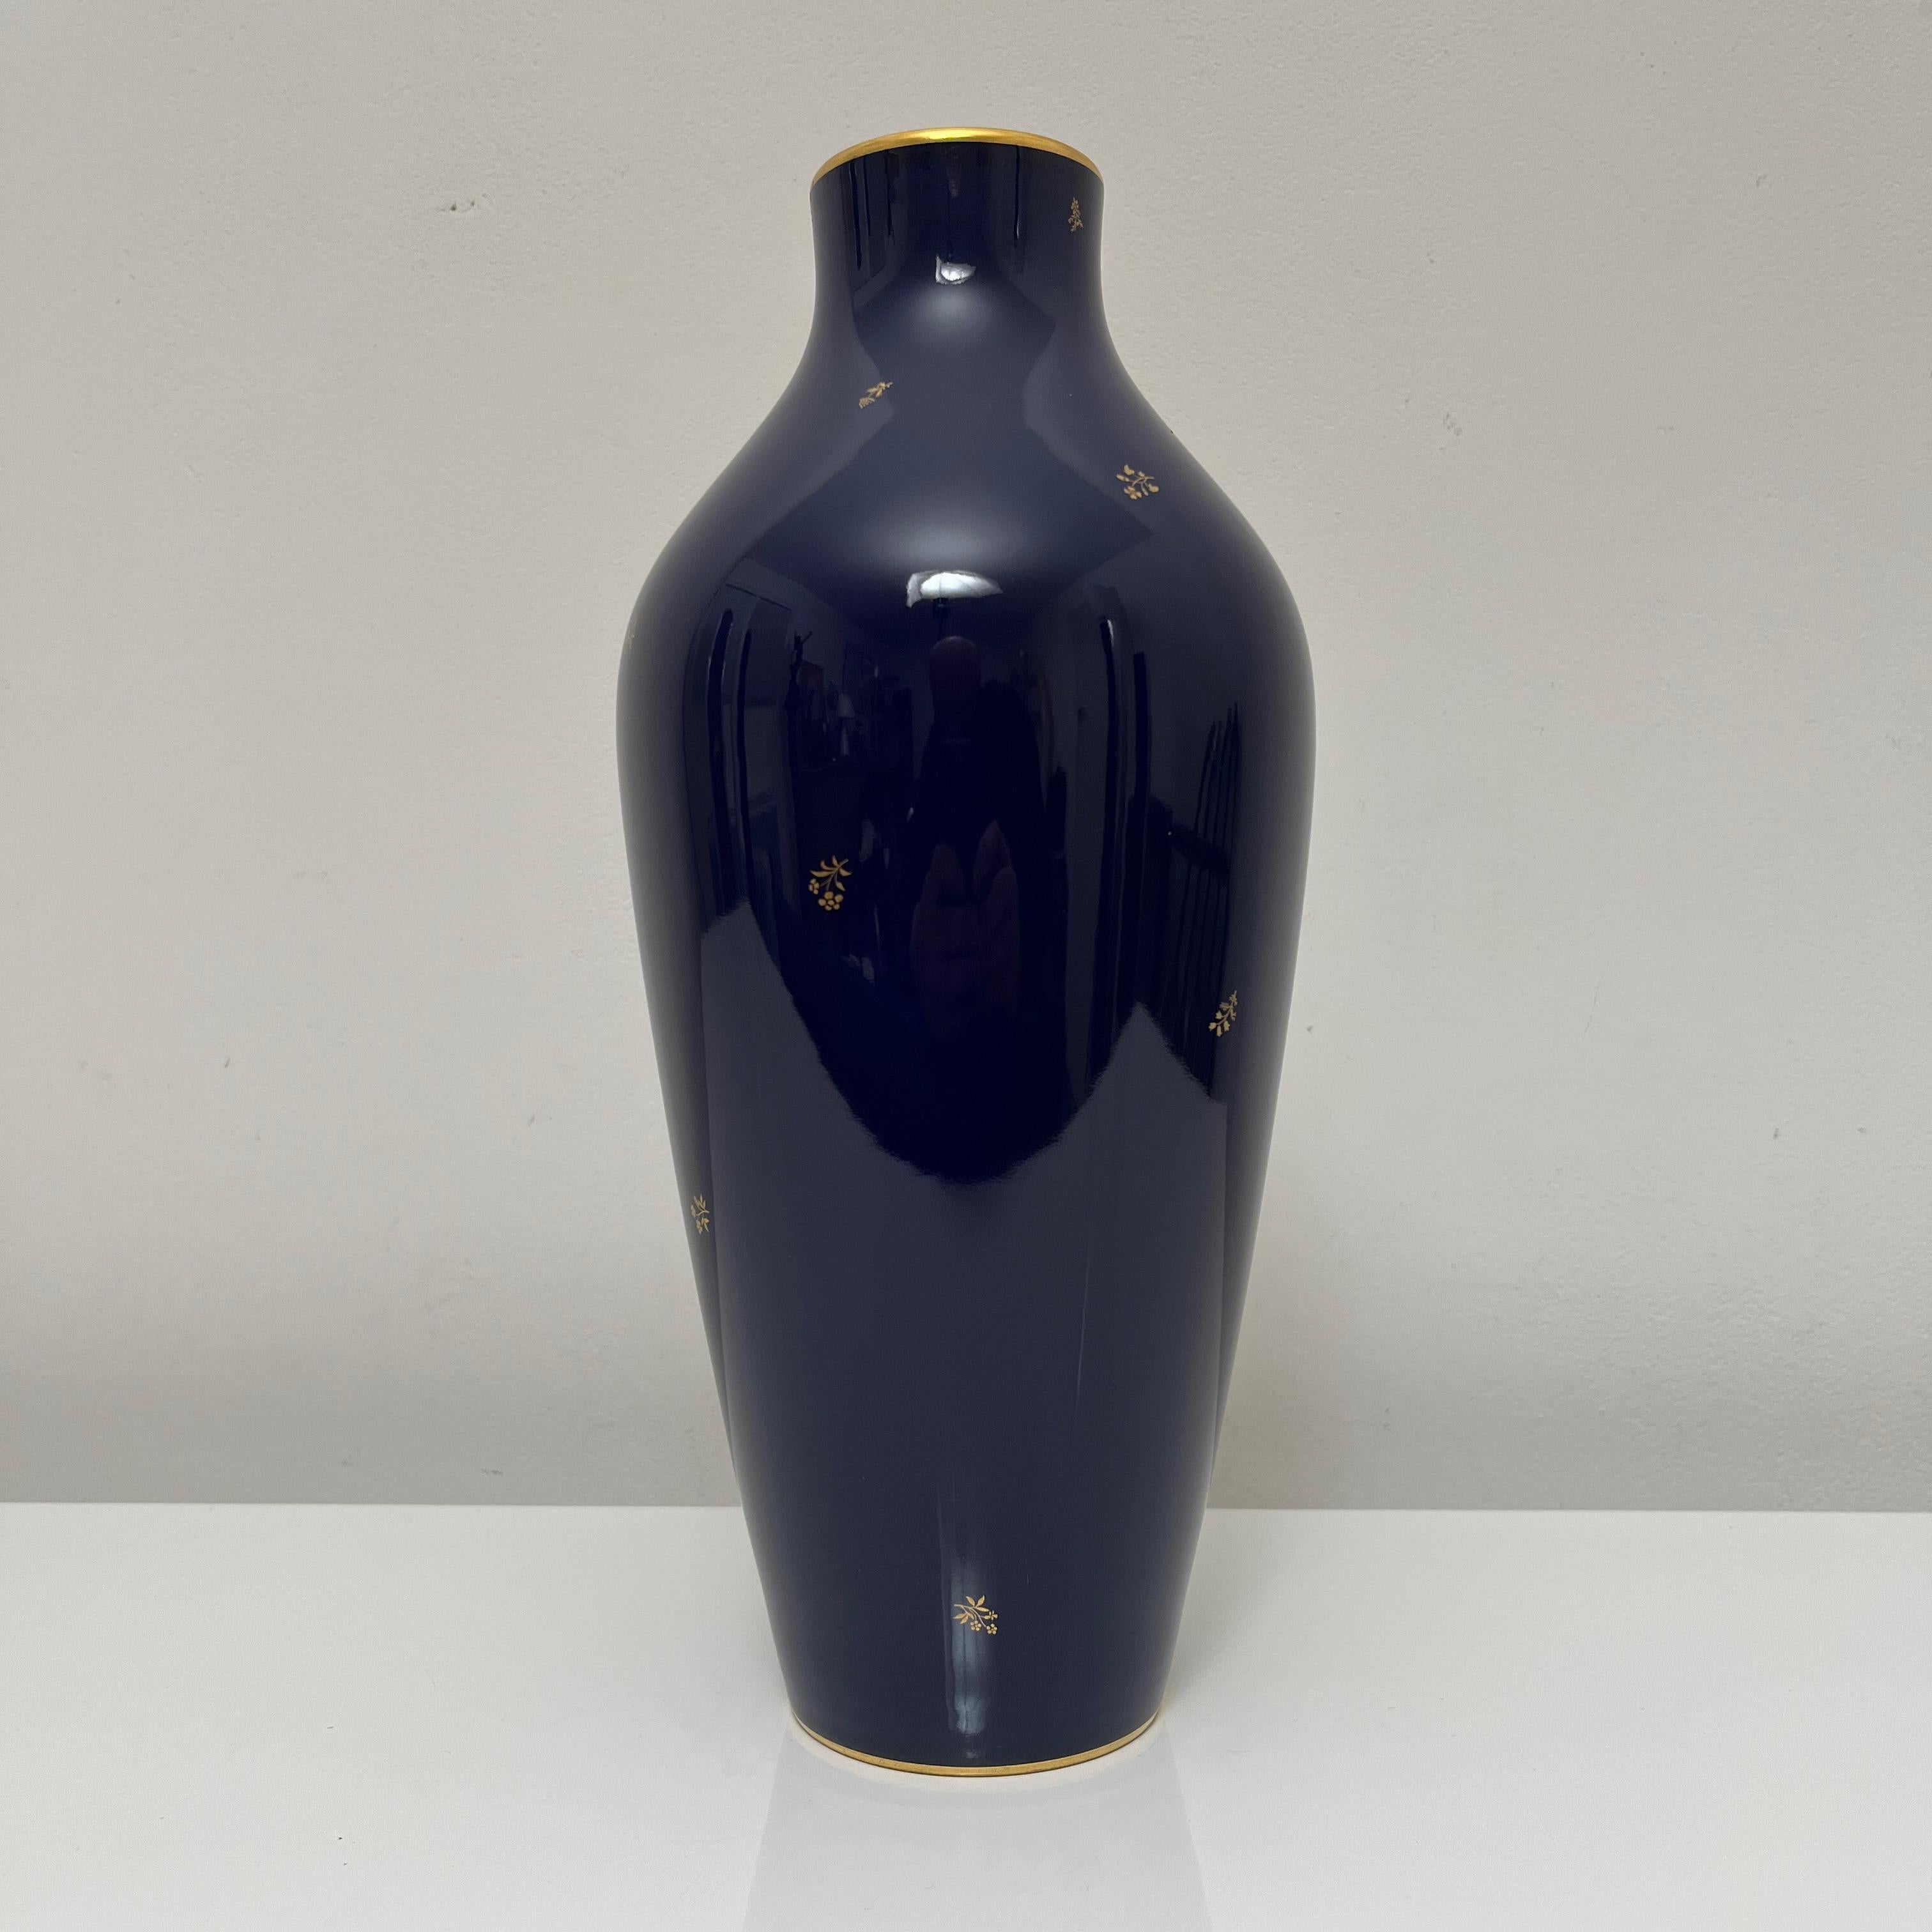 Superbe vase de la manufacture Nationale de Sèvres, connue par sous émaillage exceptionnel de couleur bleu cobalt appelé 